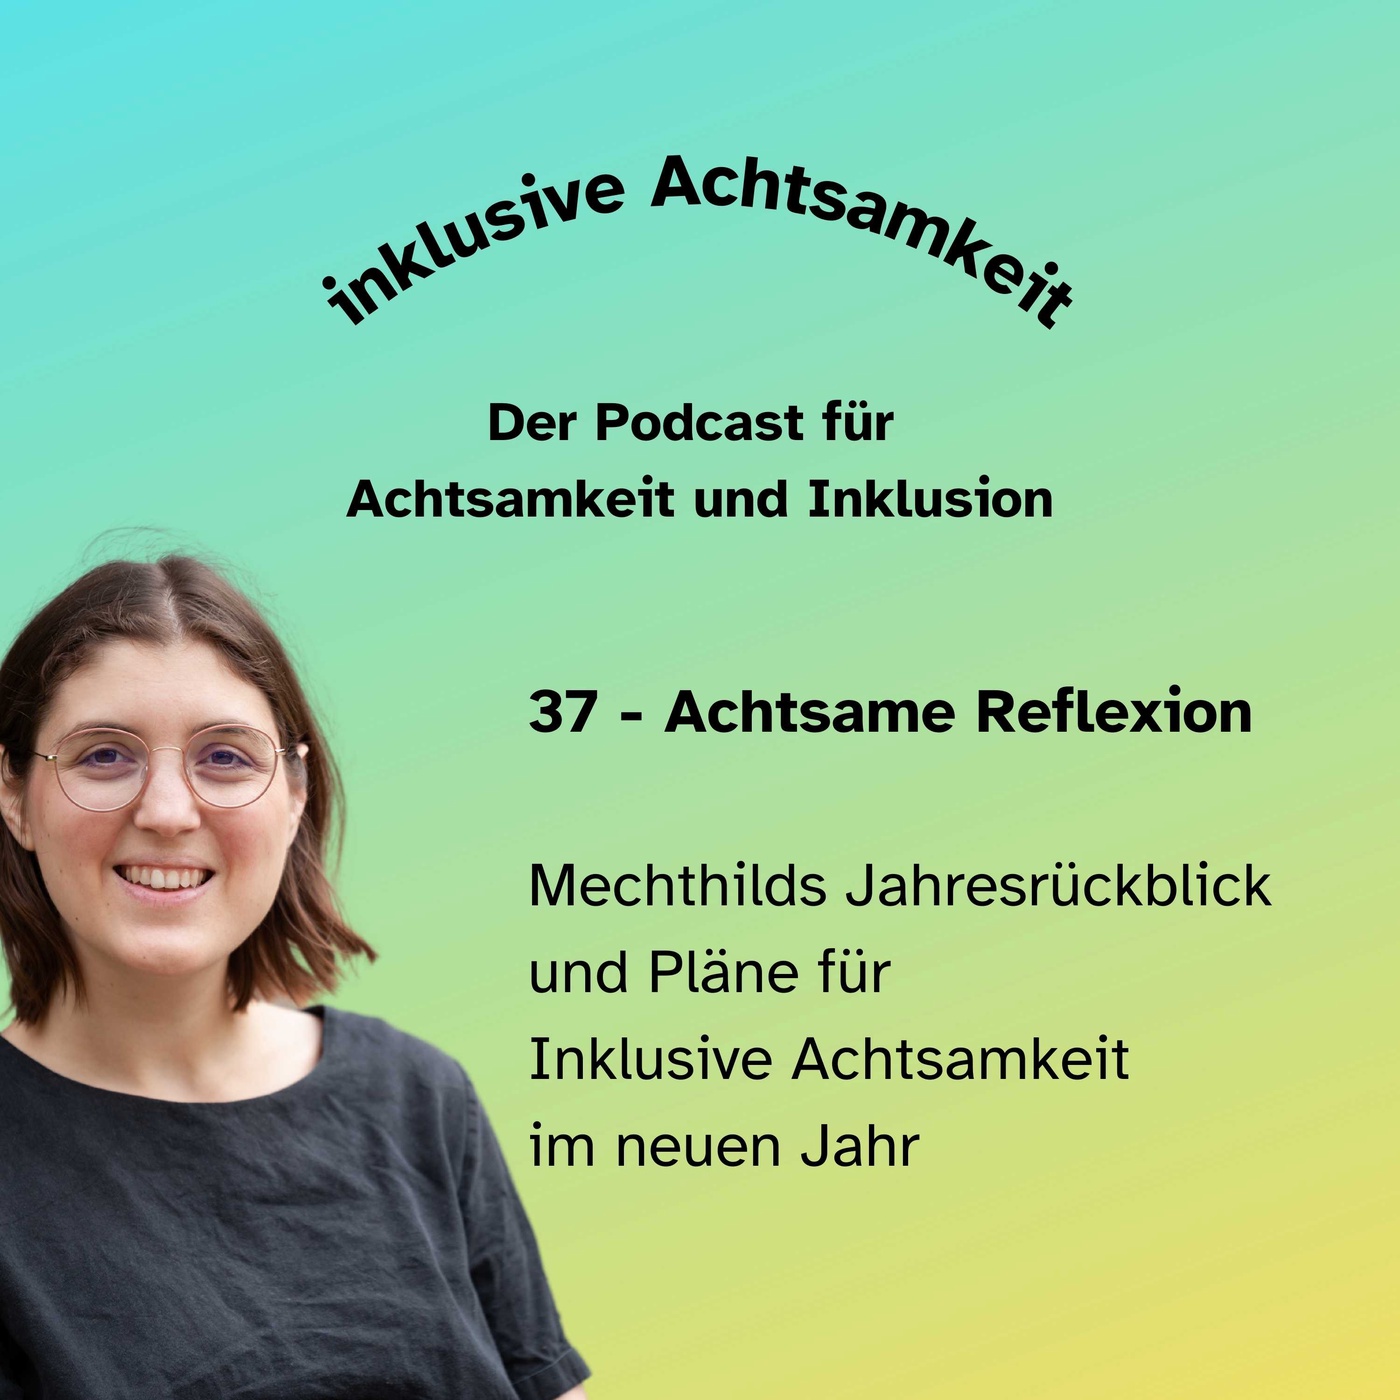 37 - Achtsame Reflexion: Mechthilds Jahresrückblick und Pläne für Inklusive Achtsamkeit im neuen Jahr